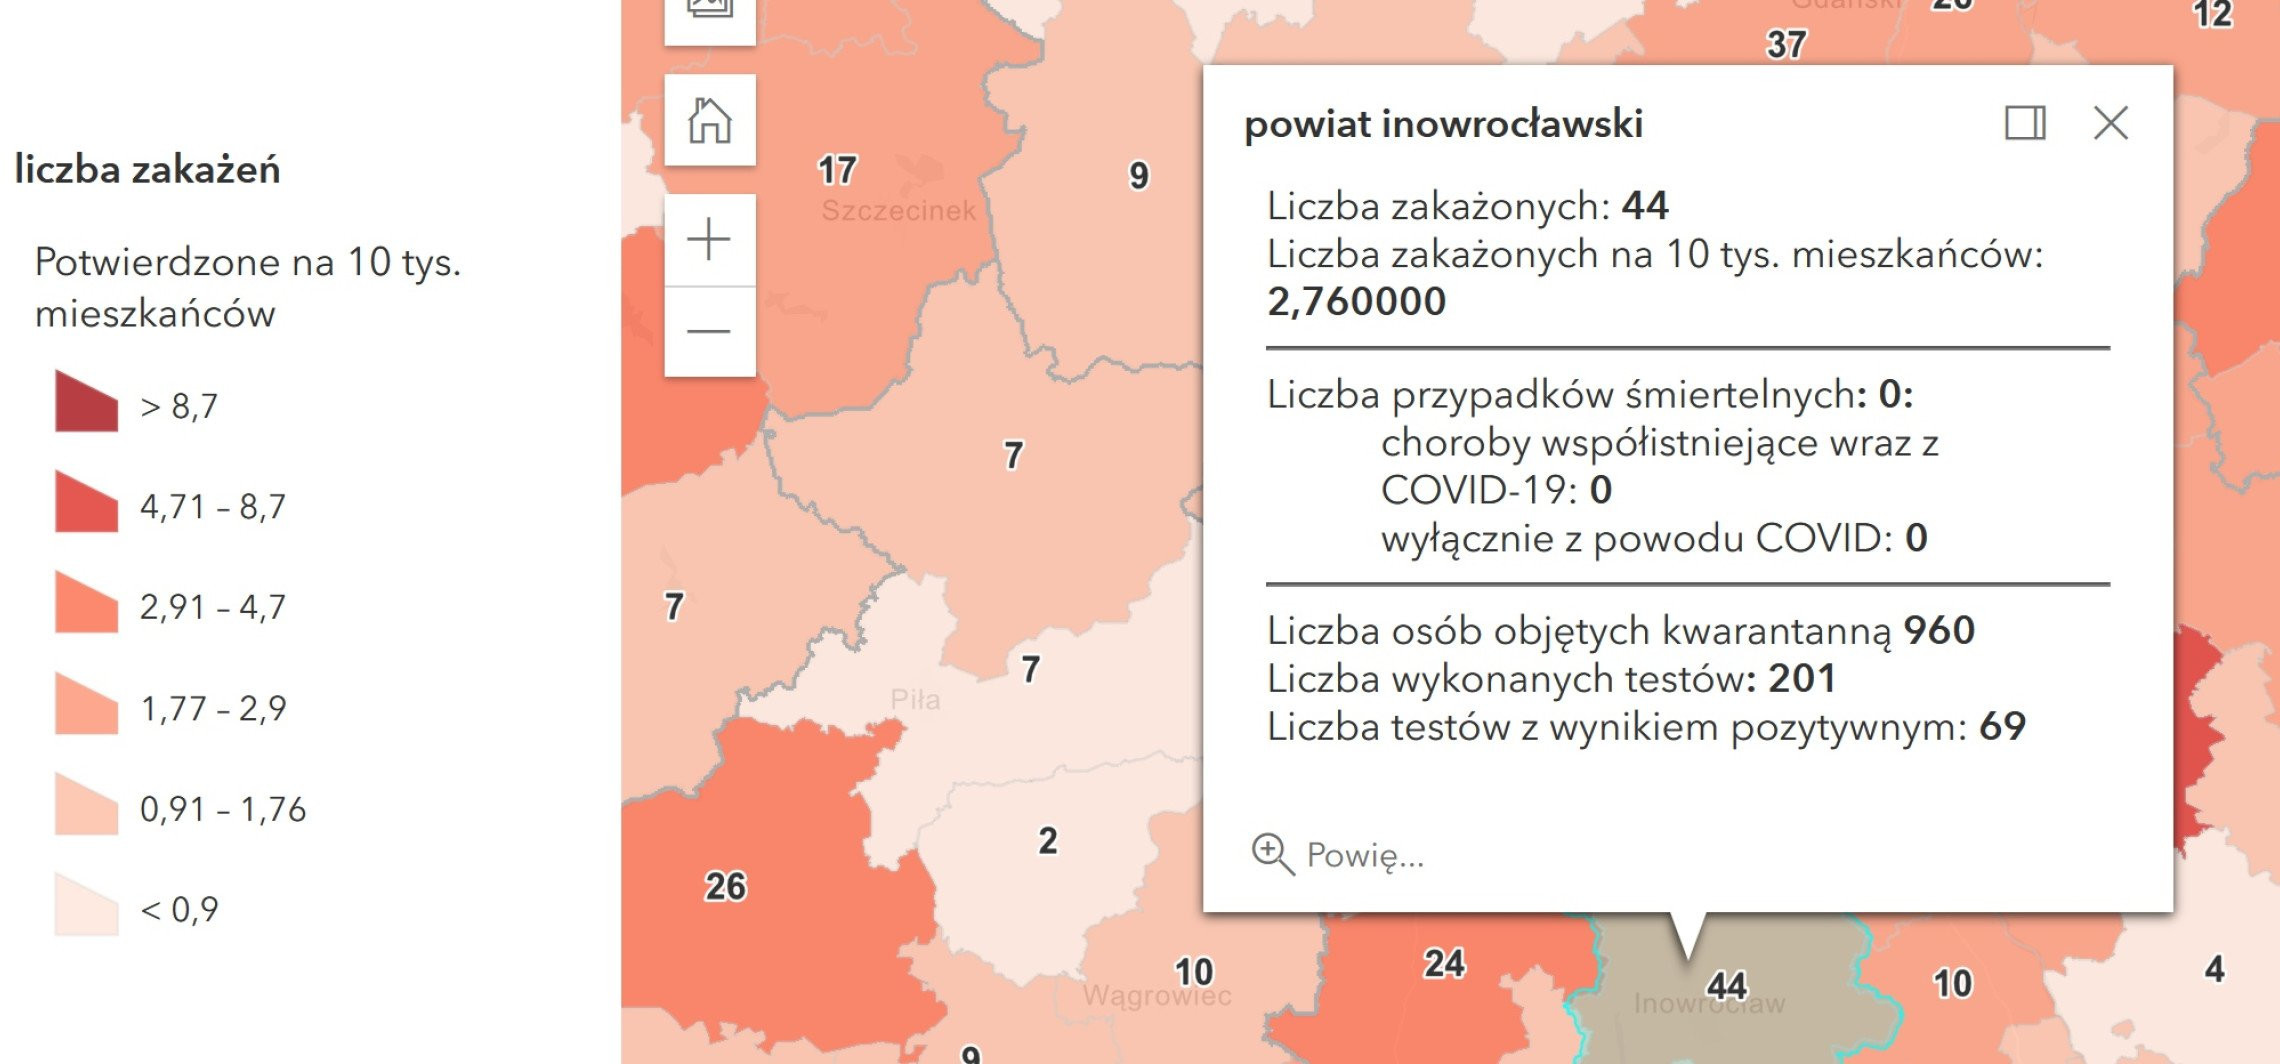 Inowrocław - Koronawirus. Dzisiejszy bilans zakażeń